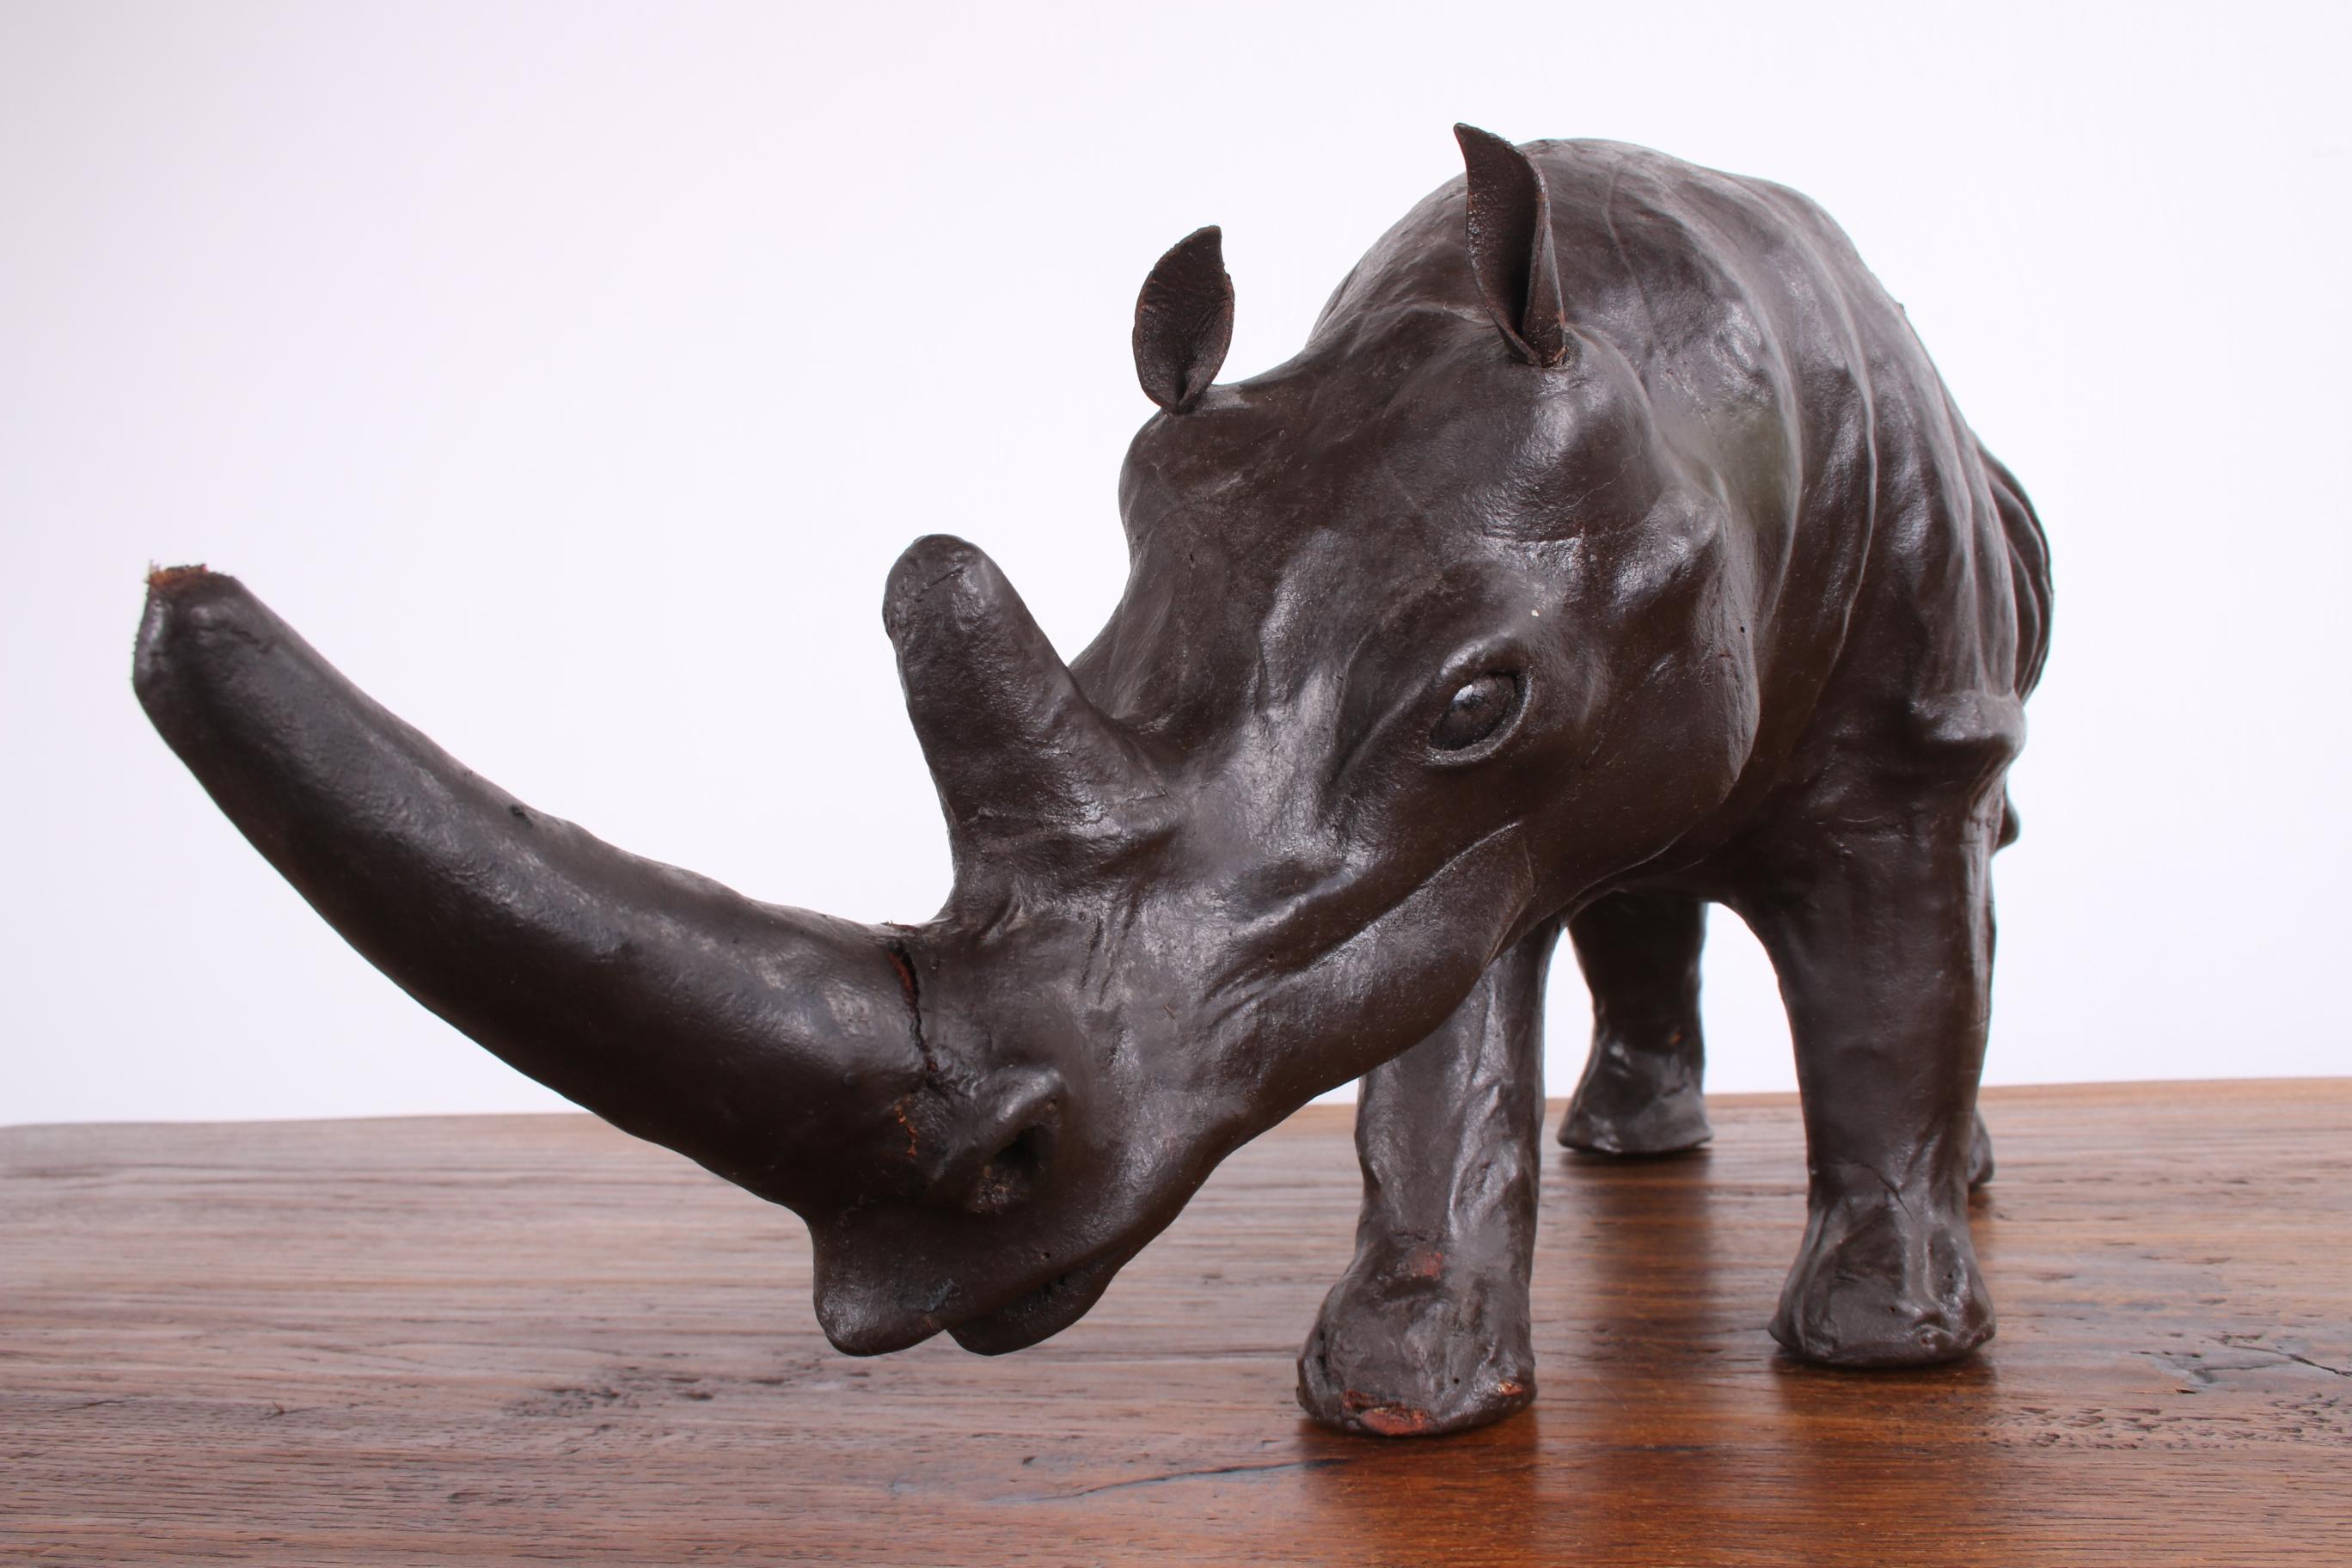 C'est un rhinocéros fabriqué en Angleterre dans les années 1950.

Le rhinocéros est recouvert de cuir véritable, vraisemblablement du cuir de bovin, d'une belle couleur brune.

C'est un bel objet à mettre quelque part.

Ce rhinocéros est en